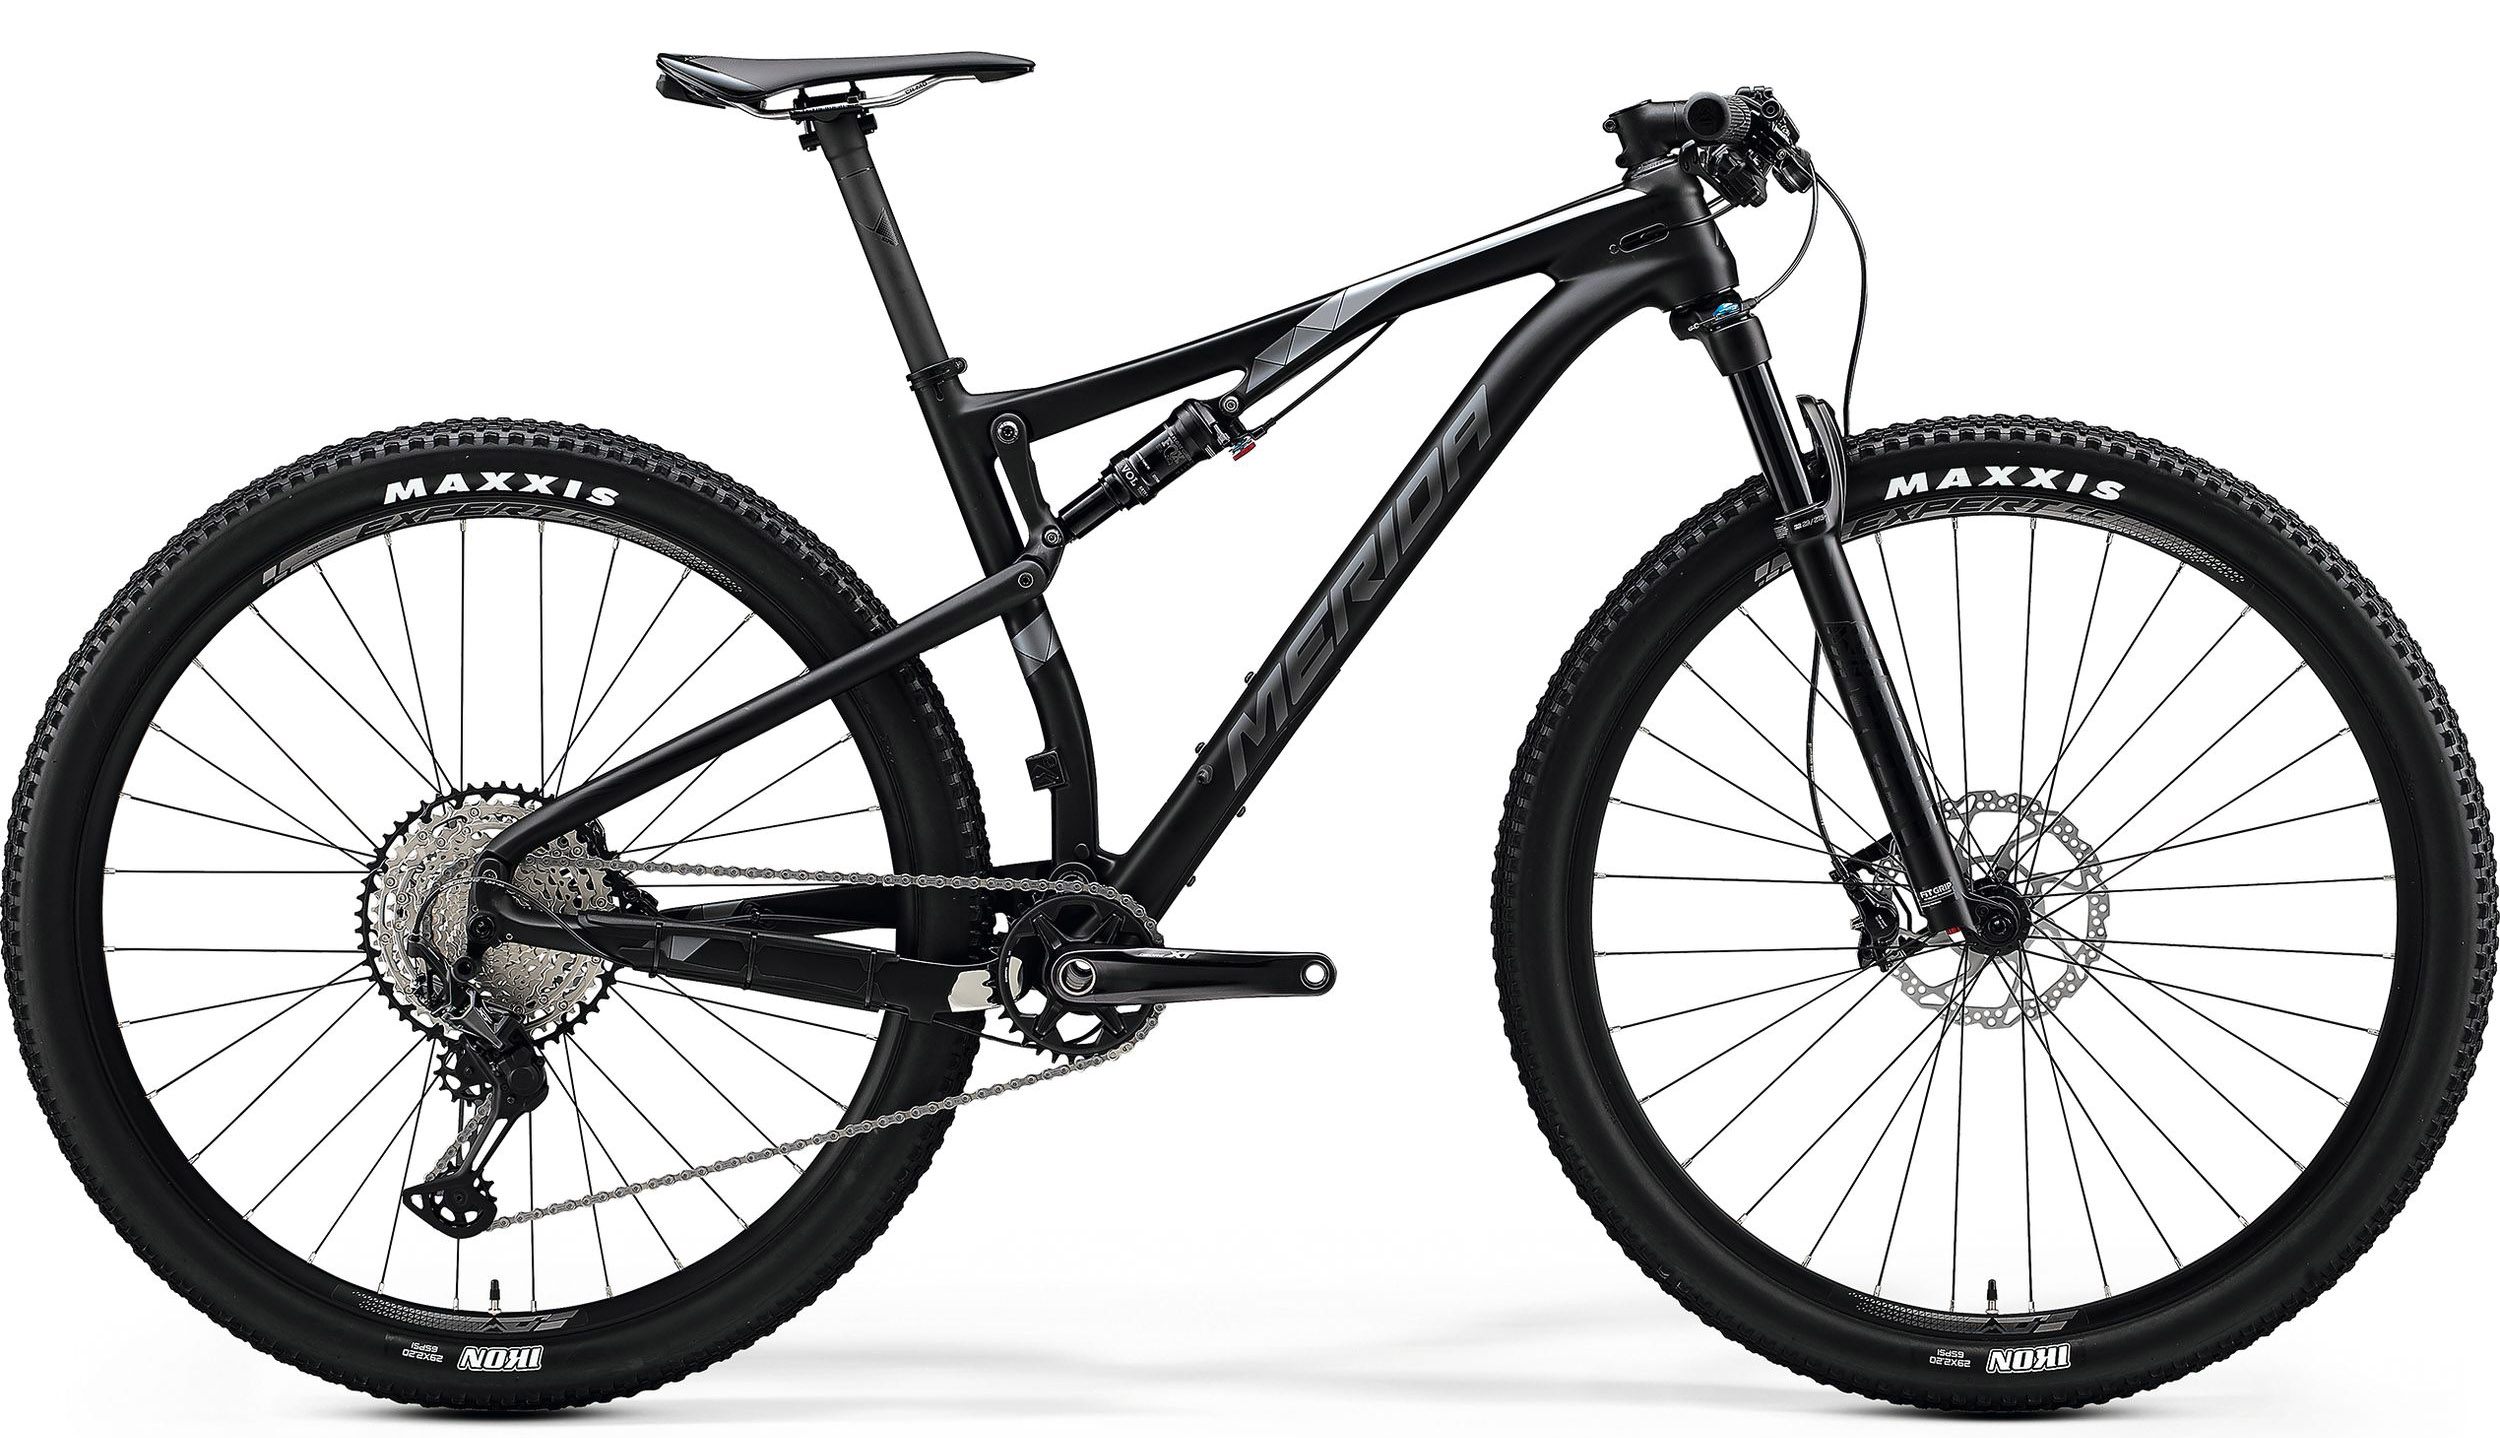  Отзывы о Двухподвесном велосипеде Merida Ninety-Six 9.XT 2020